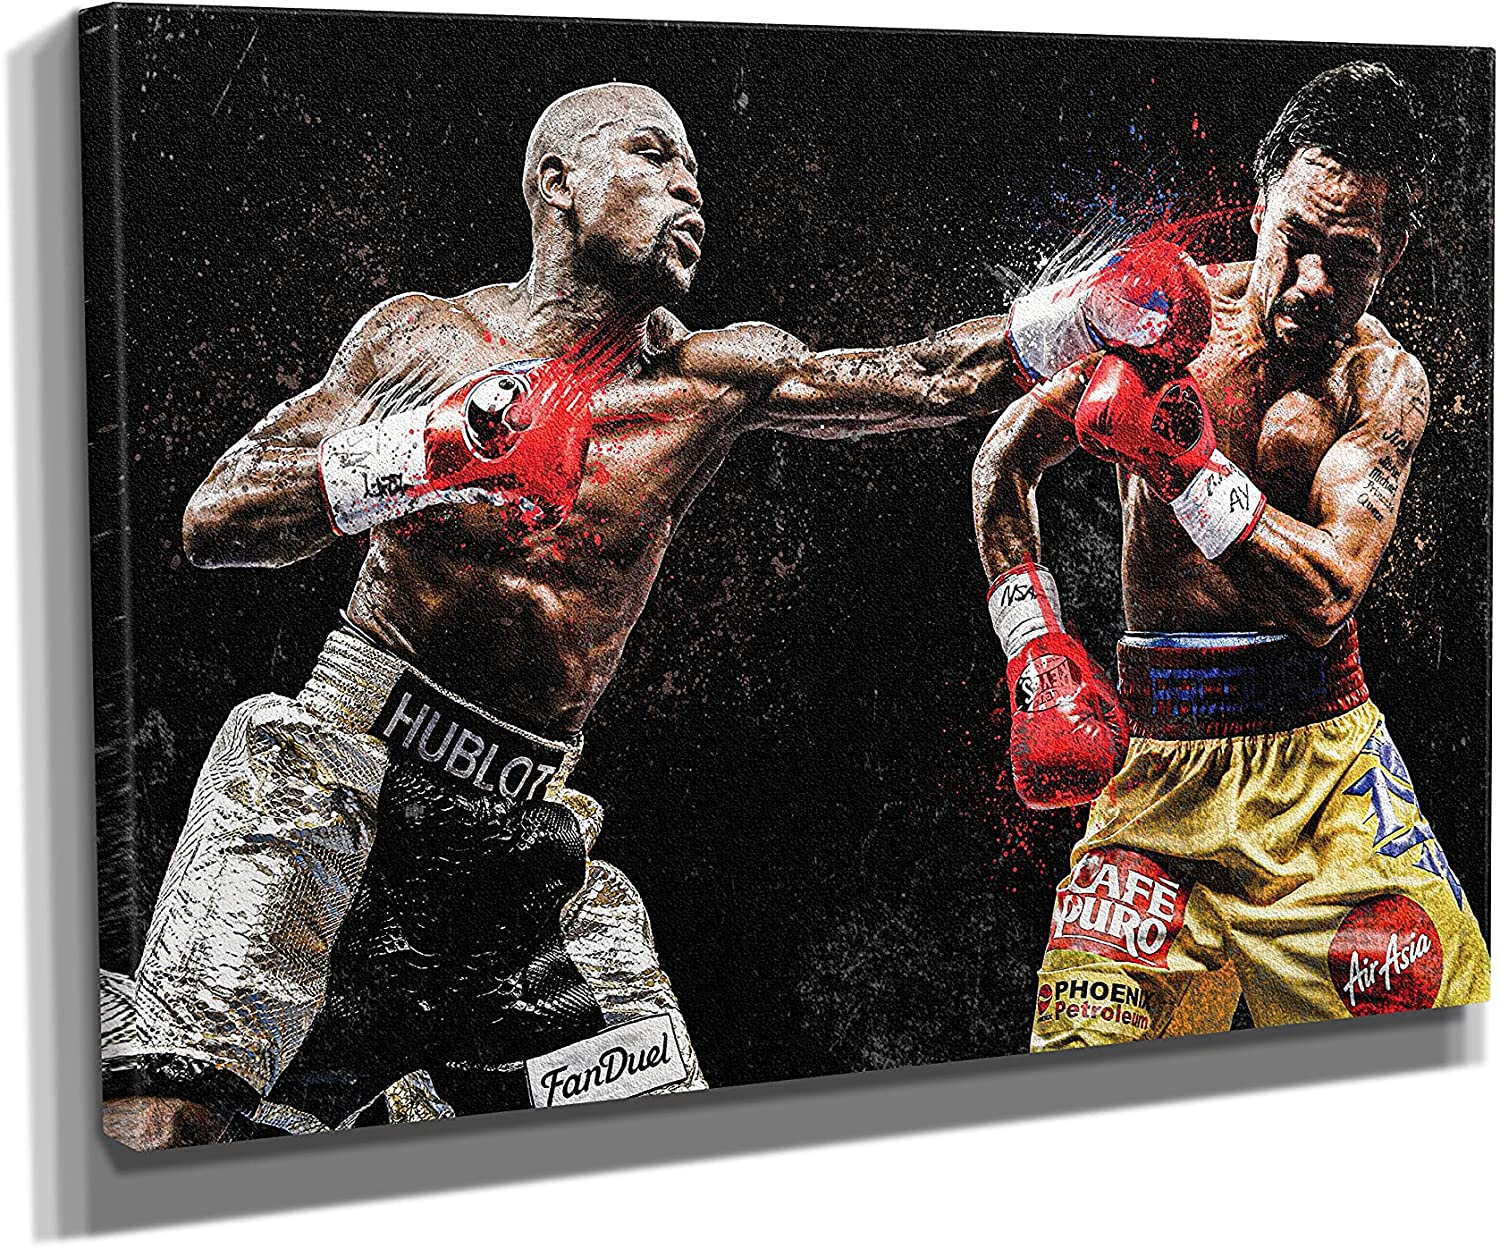 Manny Pacquiao vs Juan Manuel Marquez Boxing Hot Poster No Frame 